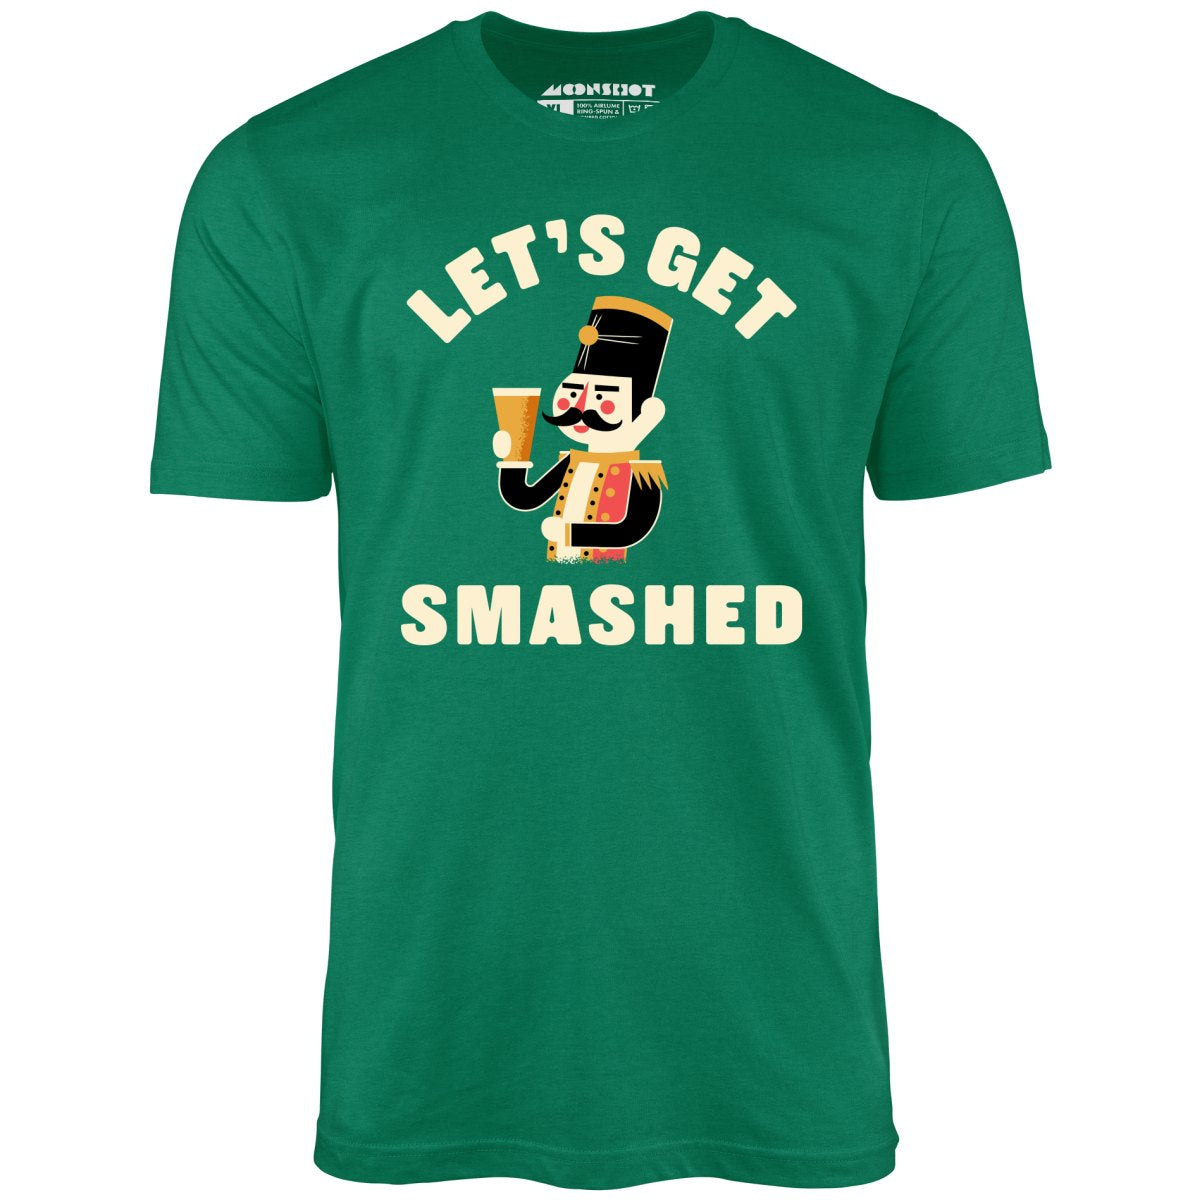 Let's Get Smashed - Unisex T-Shirt